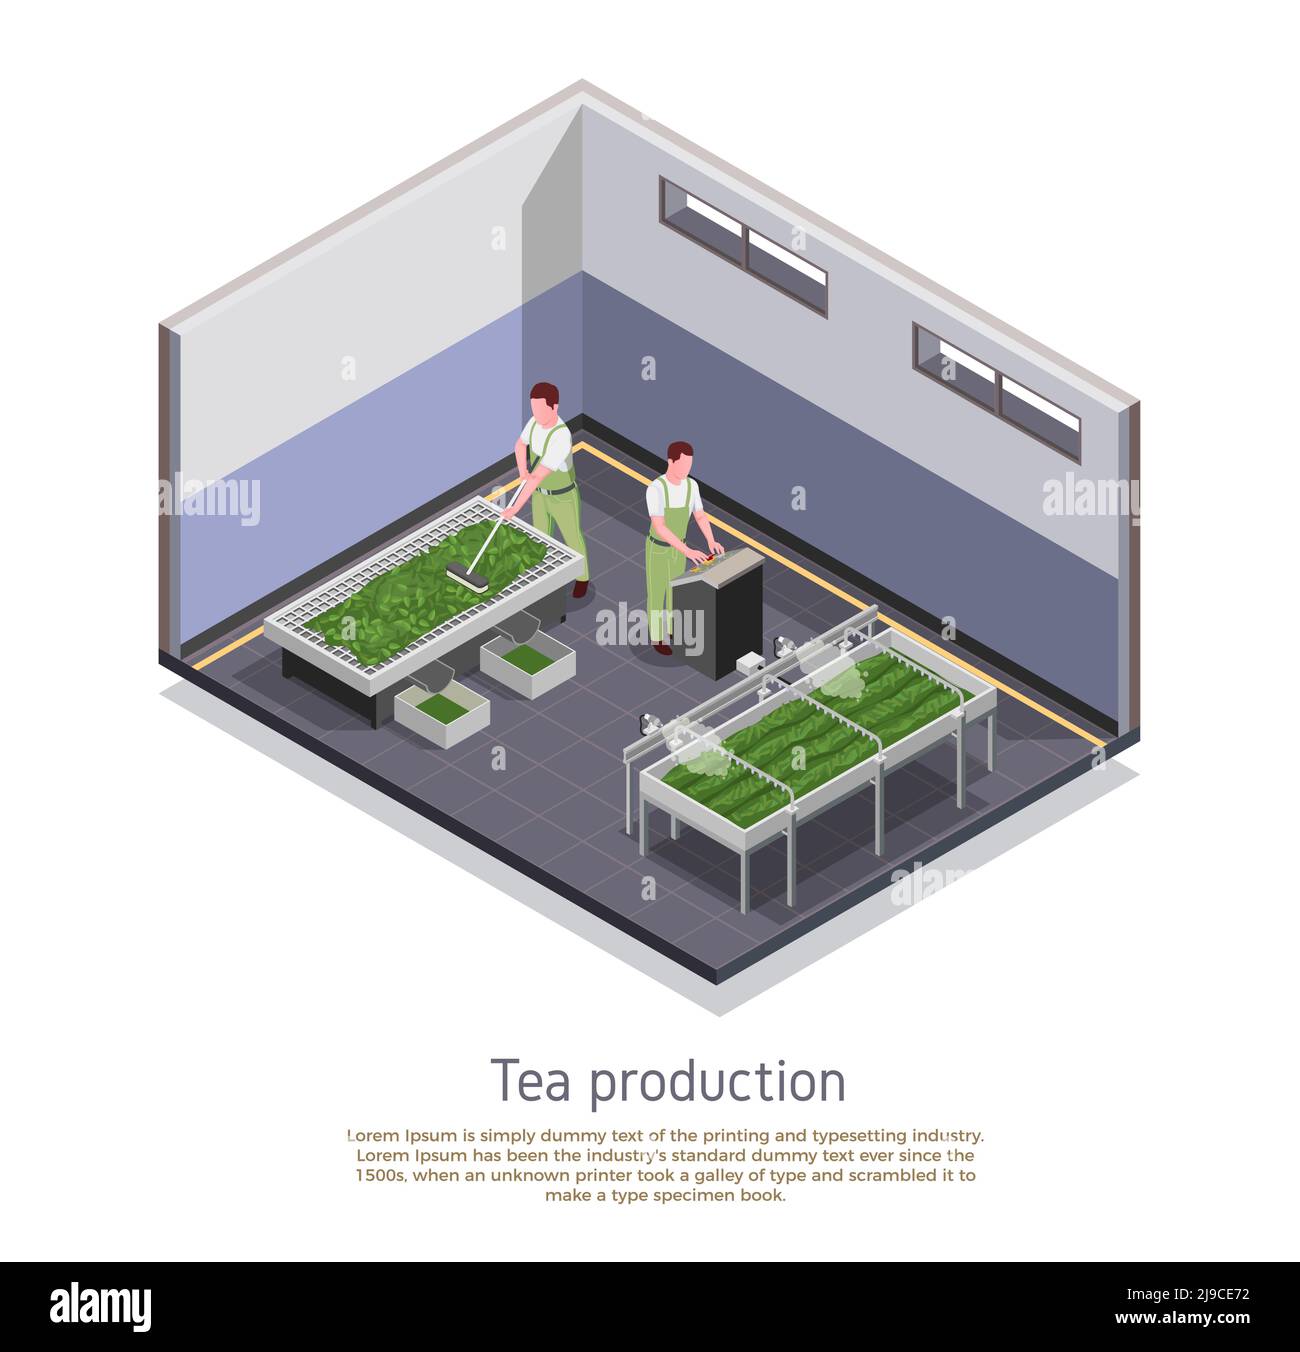 Moderne Tee-Produktionsanlage isometrische Zusammensetzung mit Grading und Oxidation Geerntete Blätter verarbeiten beschreibenden Text Vektor Illustration Stock Vektor